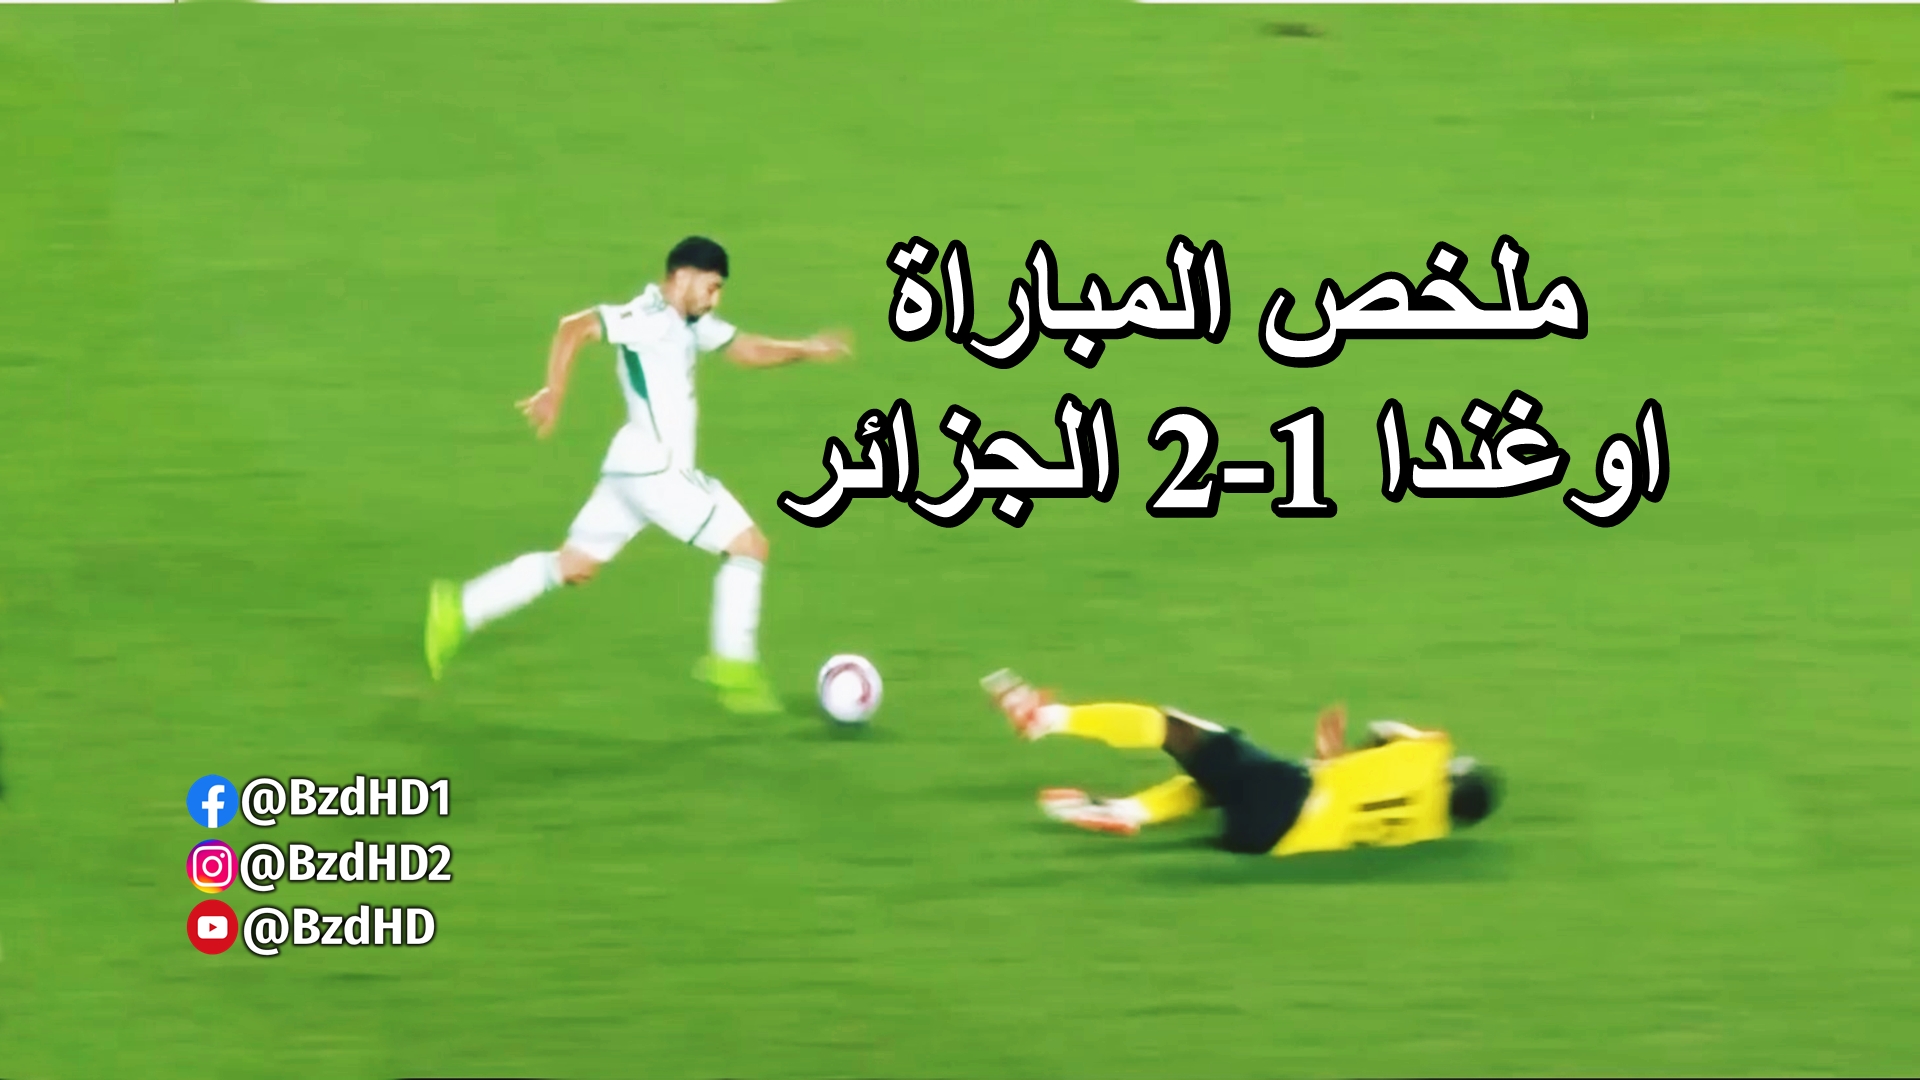 شاهد ملخص مباراة الجزائر و اوغندا تصفيات كاس العالم 2